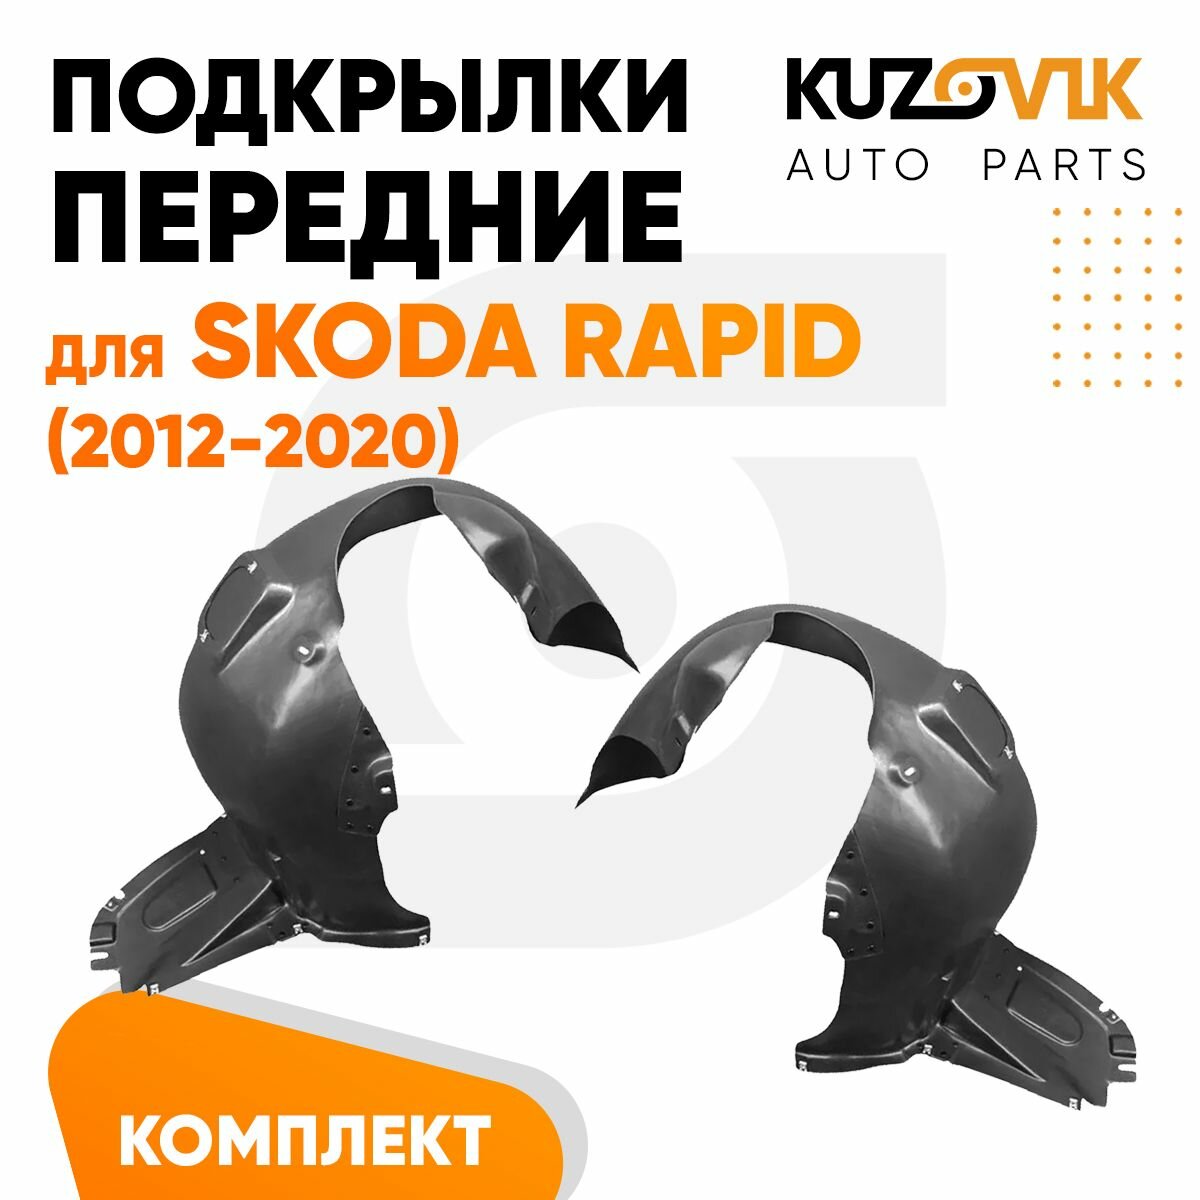 Подкрылки передние комплект Skoda Rapid (2012-2020)